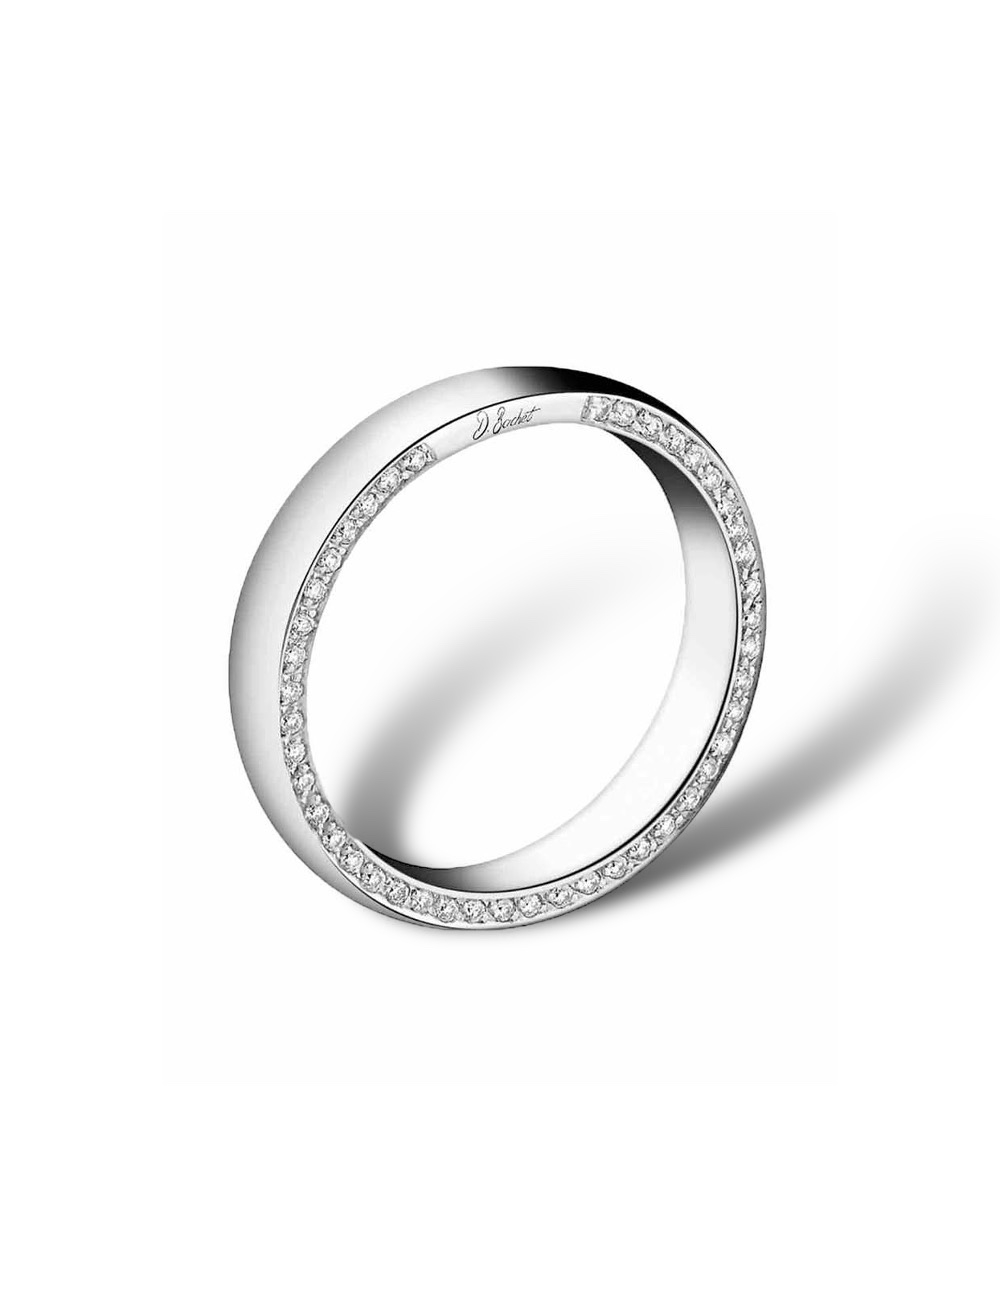 Alliance unisexe 'Subtile' en platine, avec diamants noirs et blancs sertis sur les deux tranches de l'anneau.